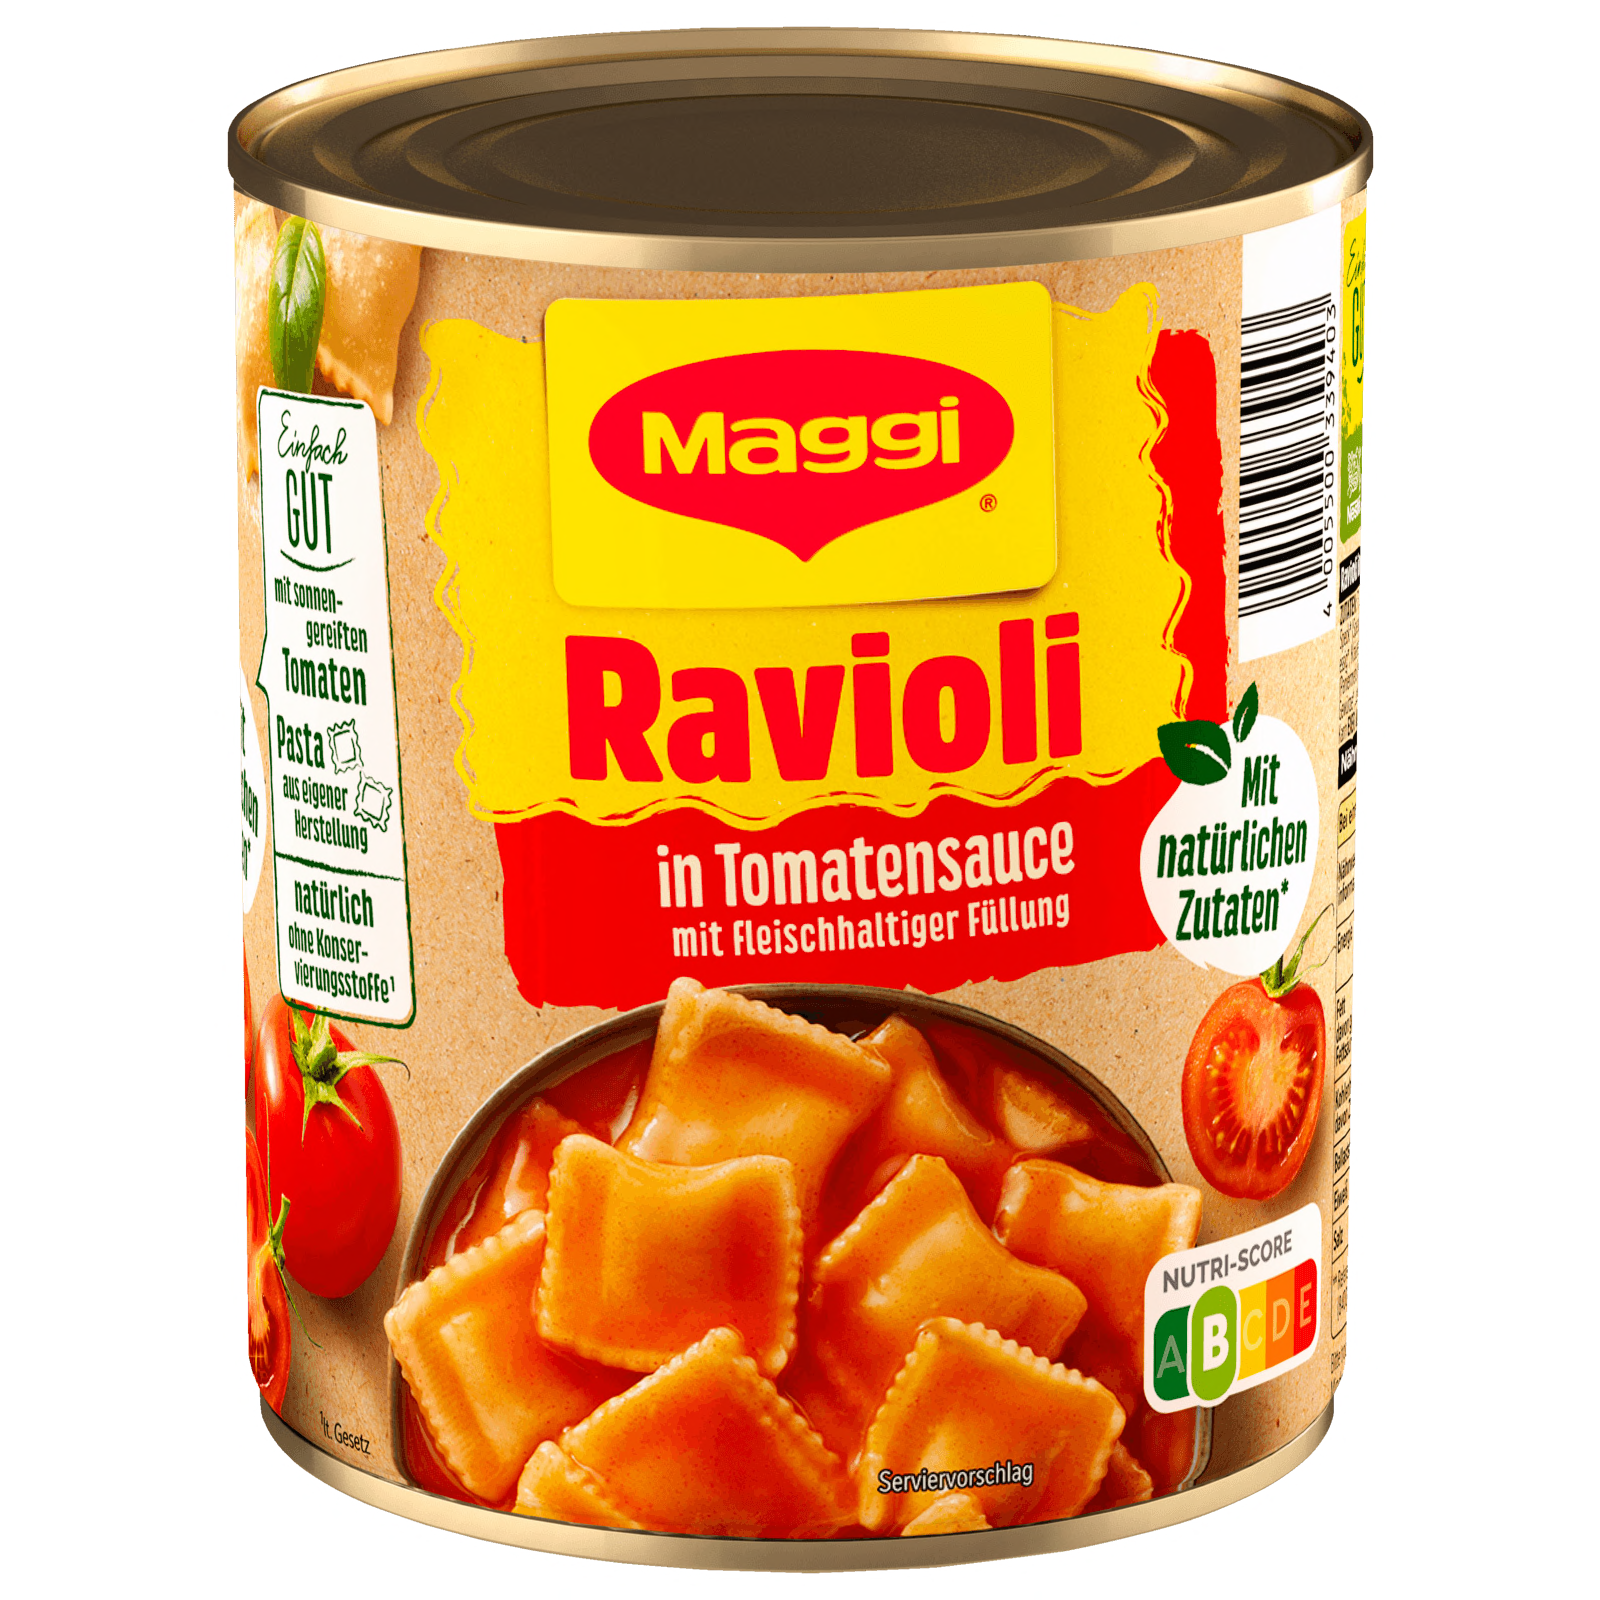 Maggi Ravioli in Tomatensauce 800g bei REWE online bestellen!